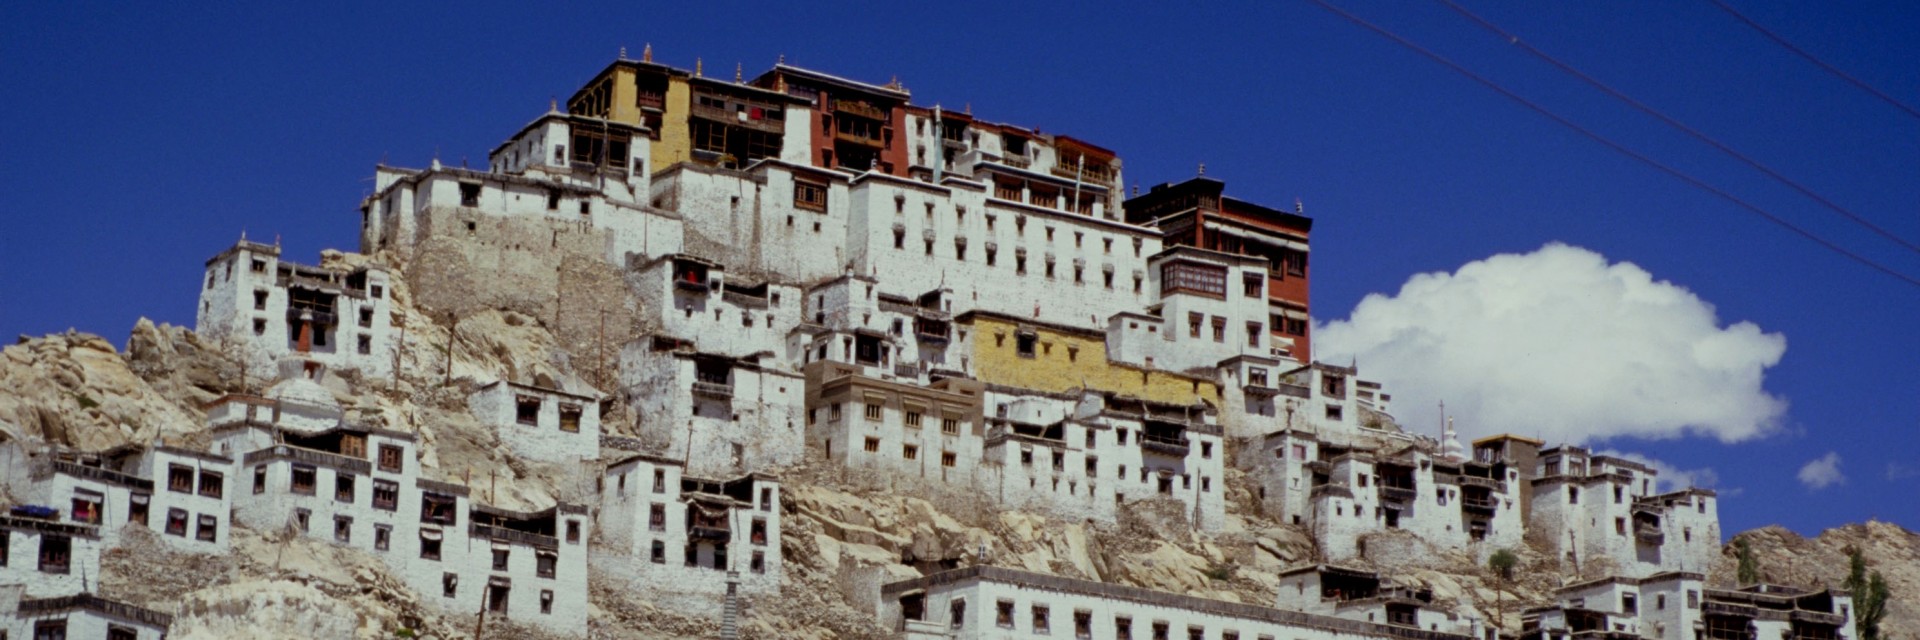 Thiksei - Ladakh